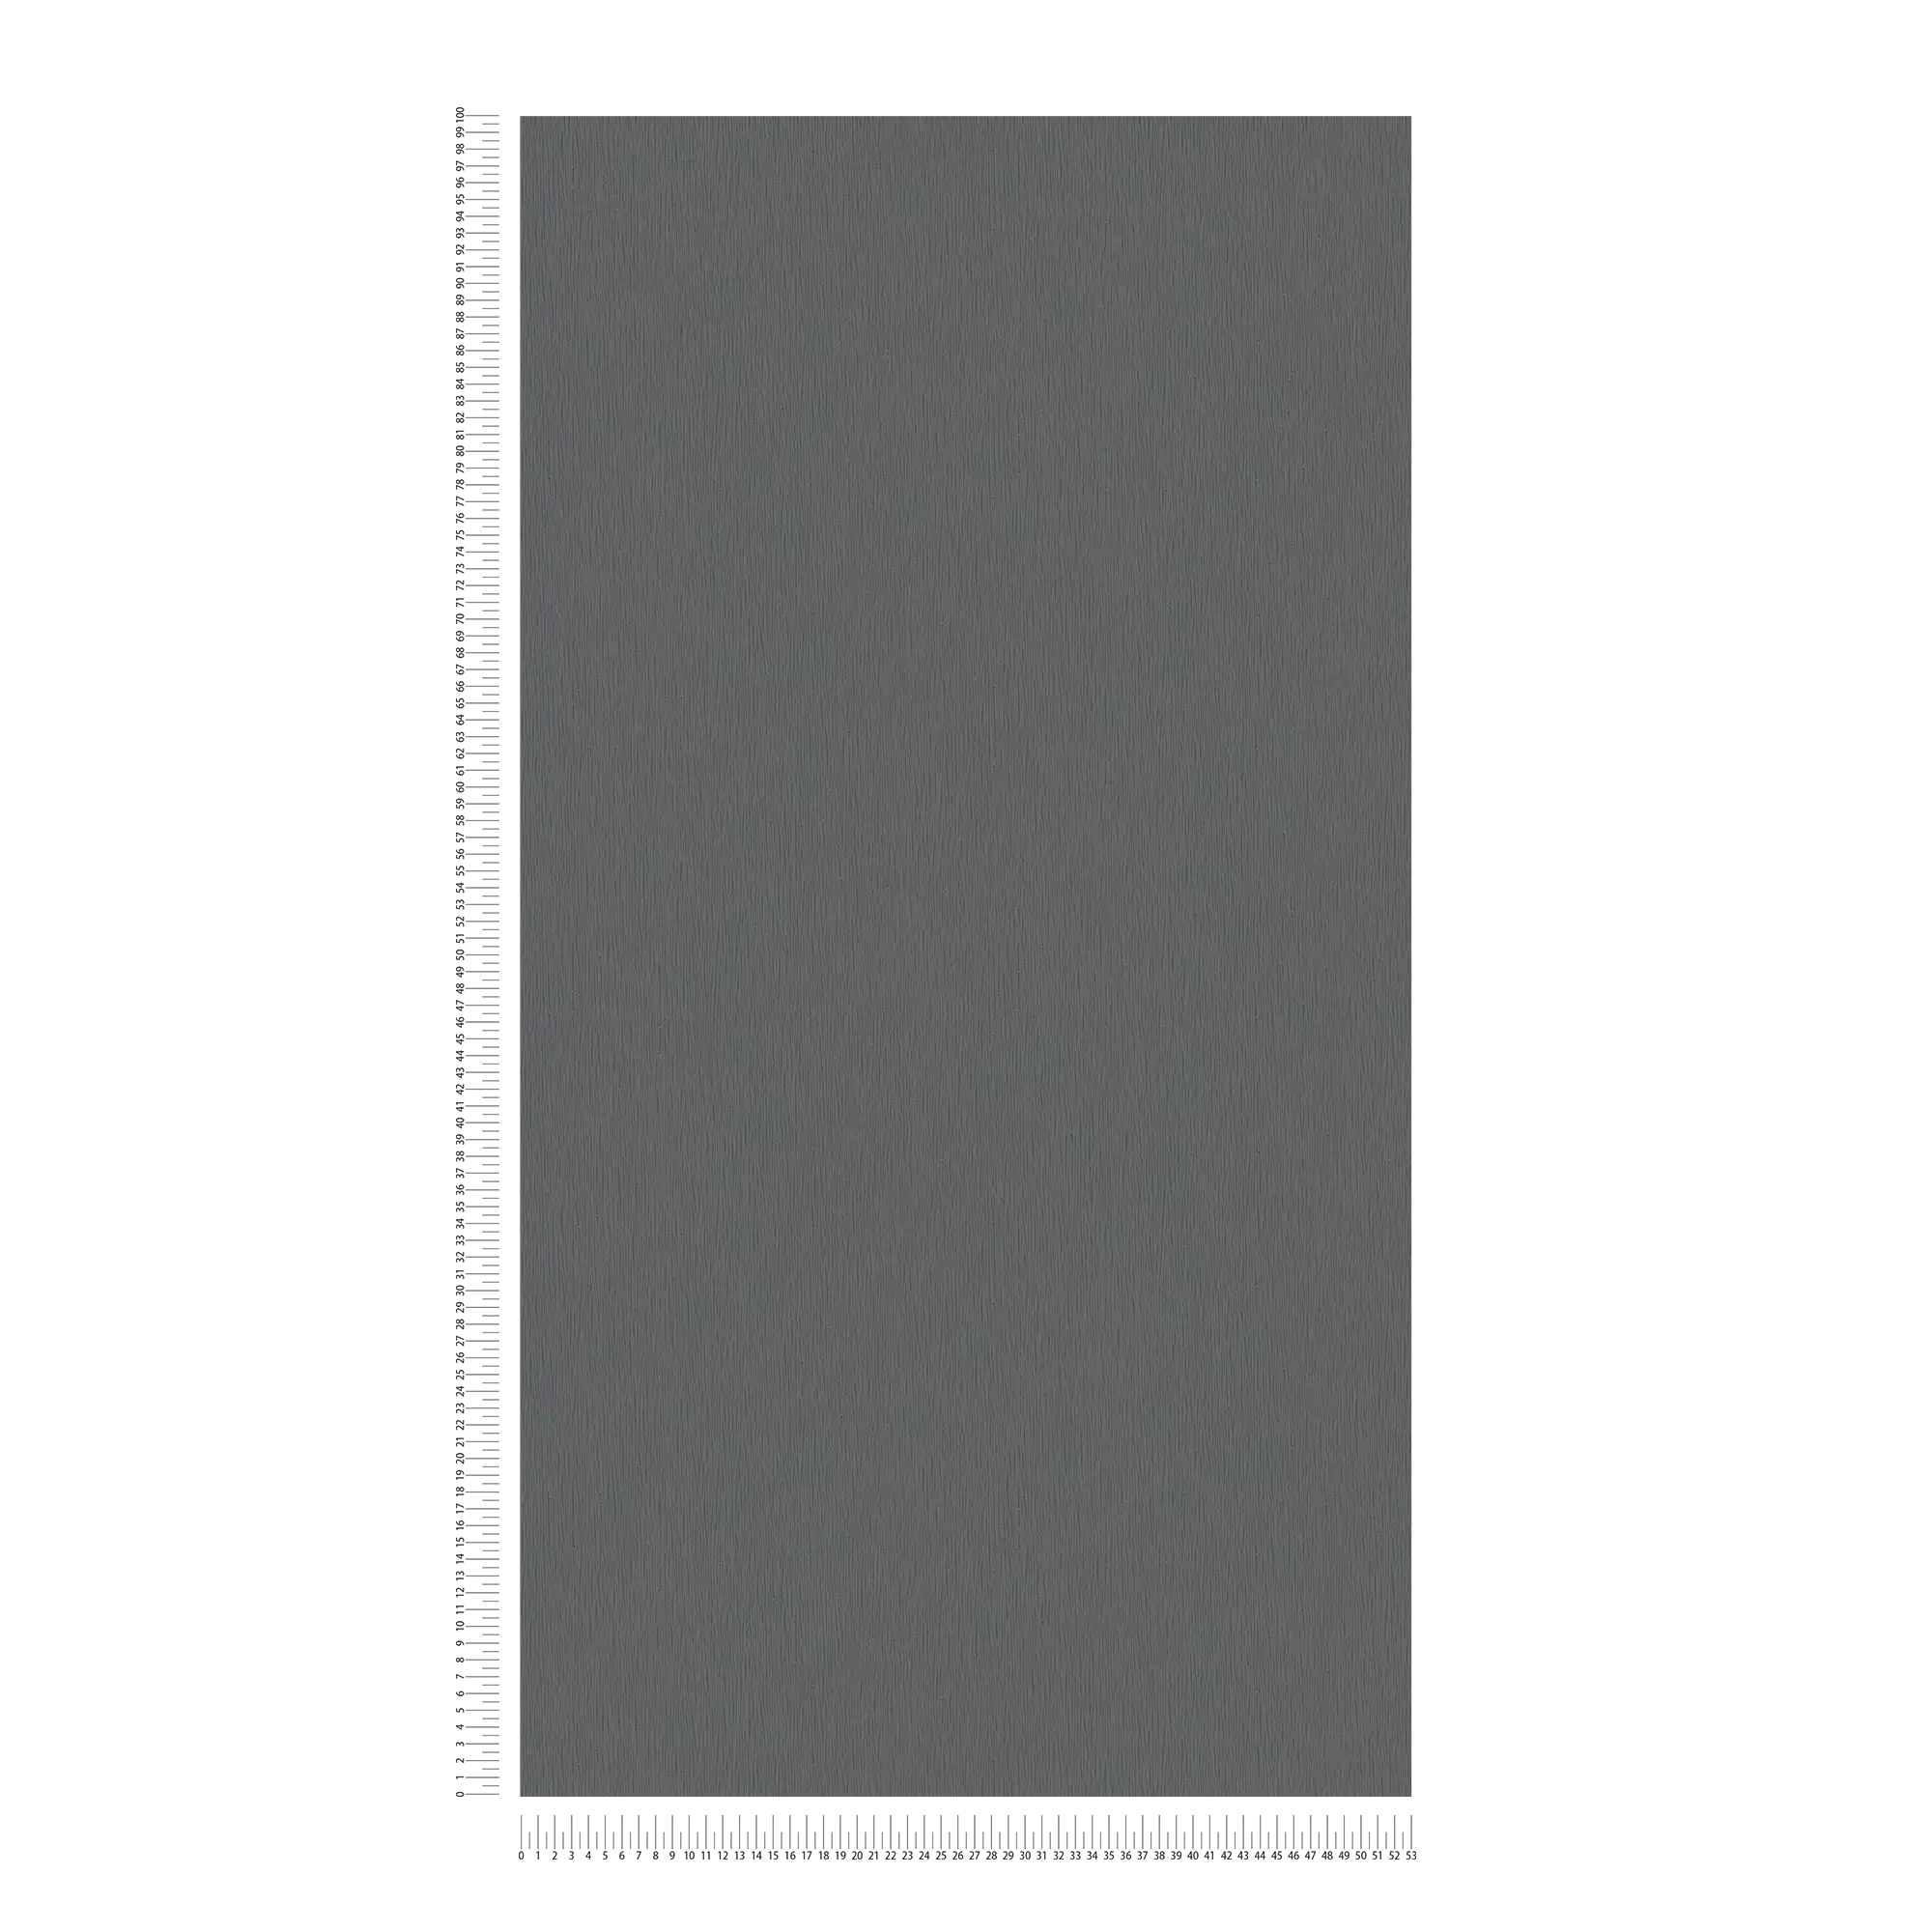             Vliesbehang antraciet met natuurlijk ton sur ton structuurpatroon - metallic, zwart
        